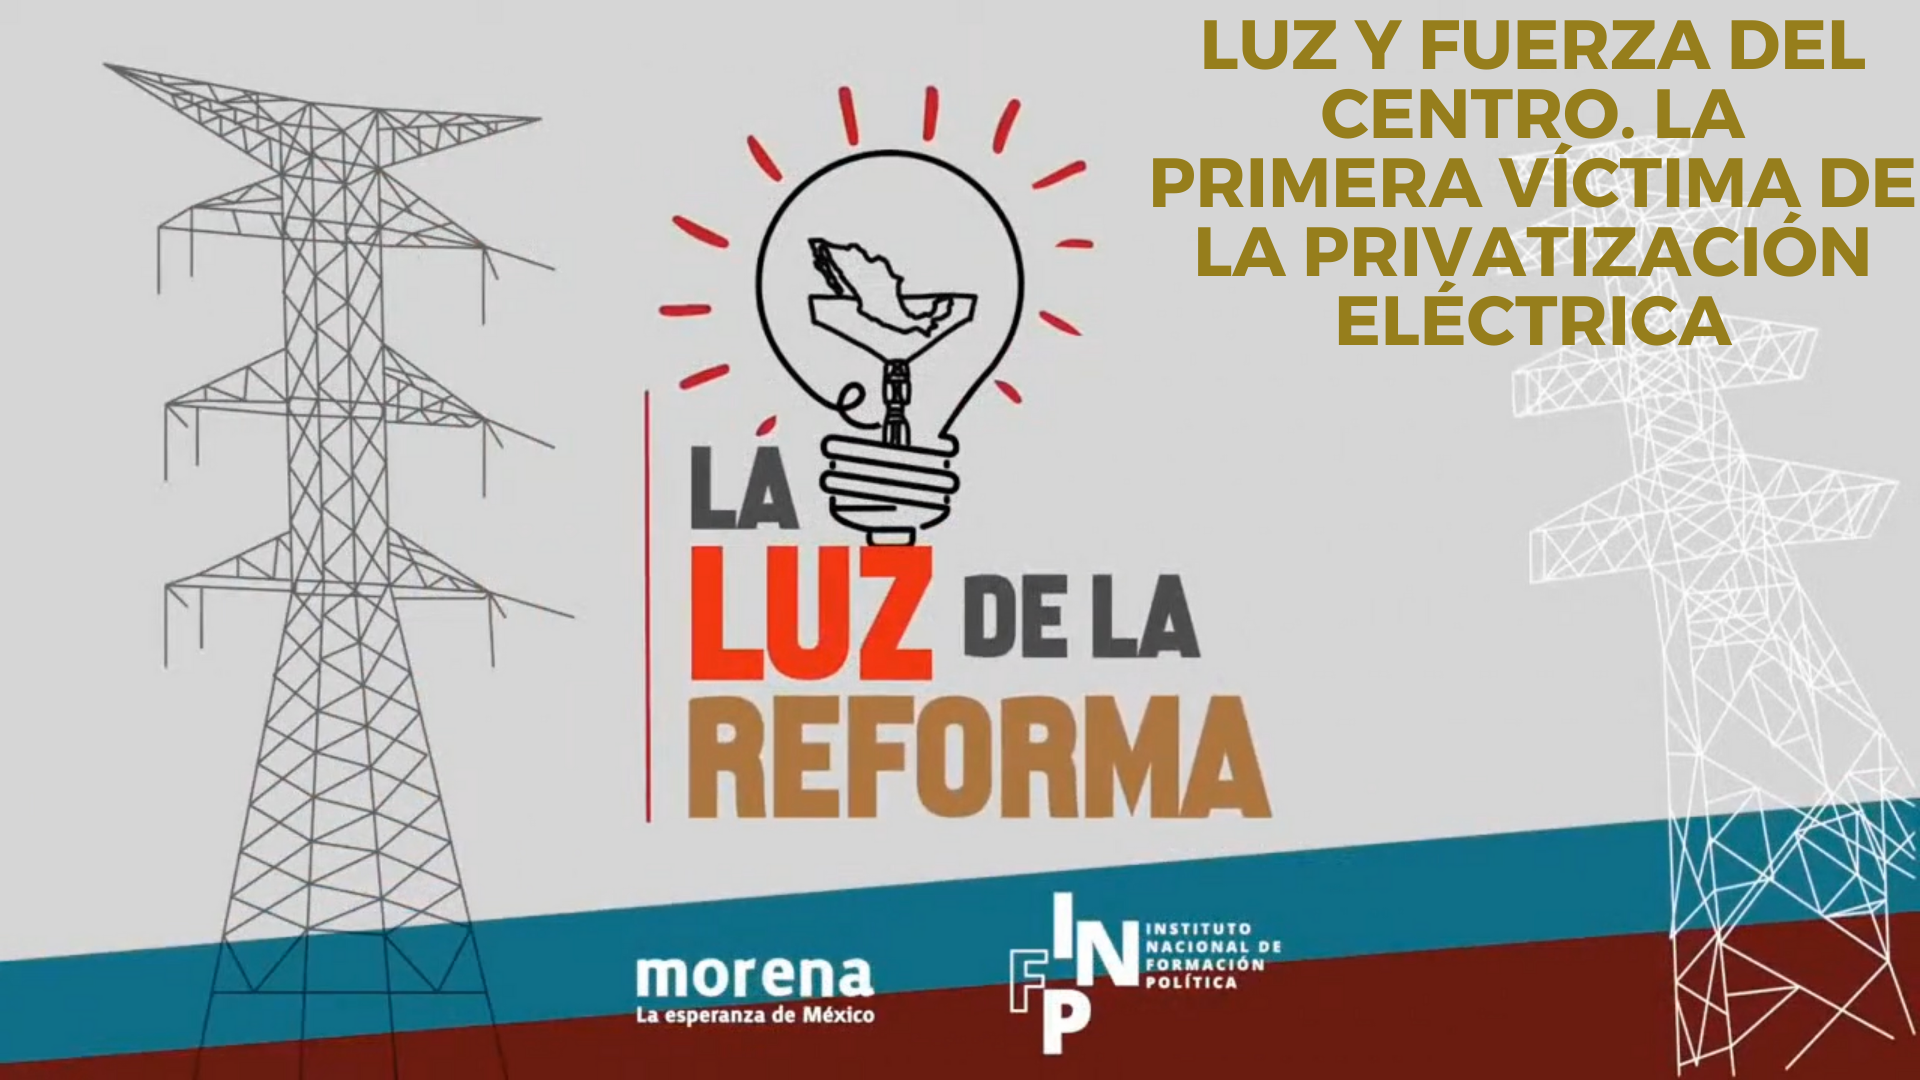 La Luz de la Reforma – Luz y Fuerza del Centro. La Primera Víctima de la Privatización Eléctrica